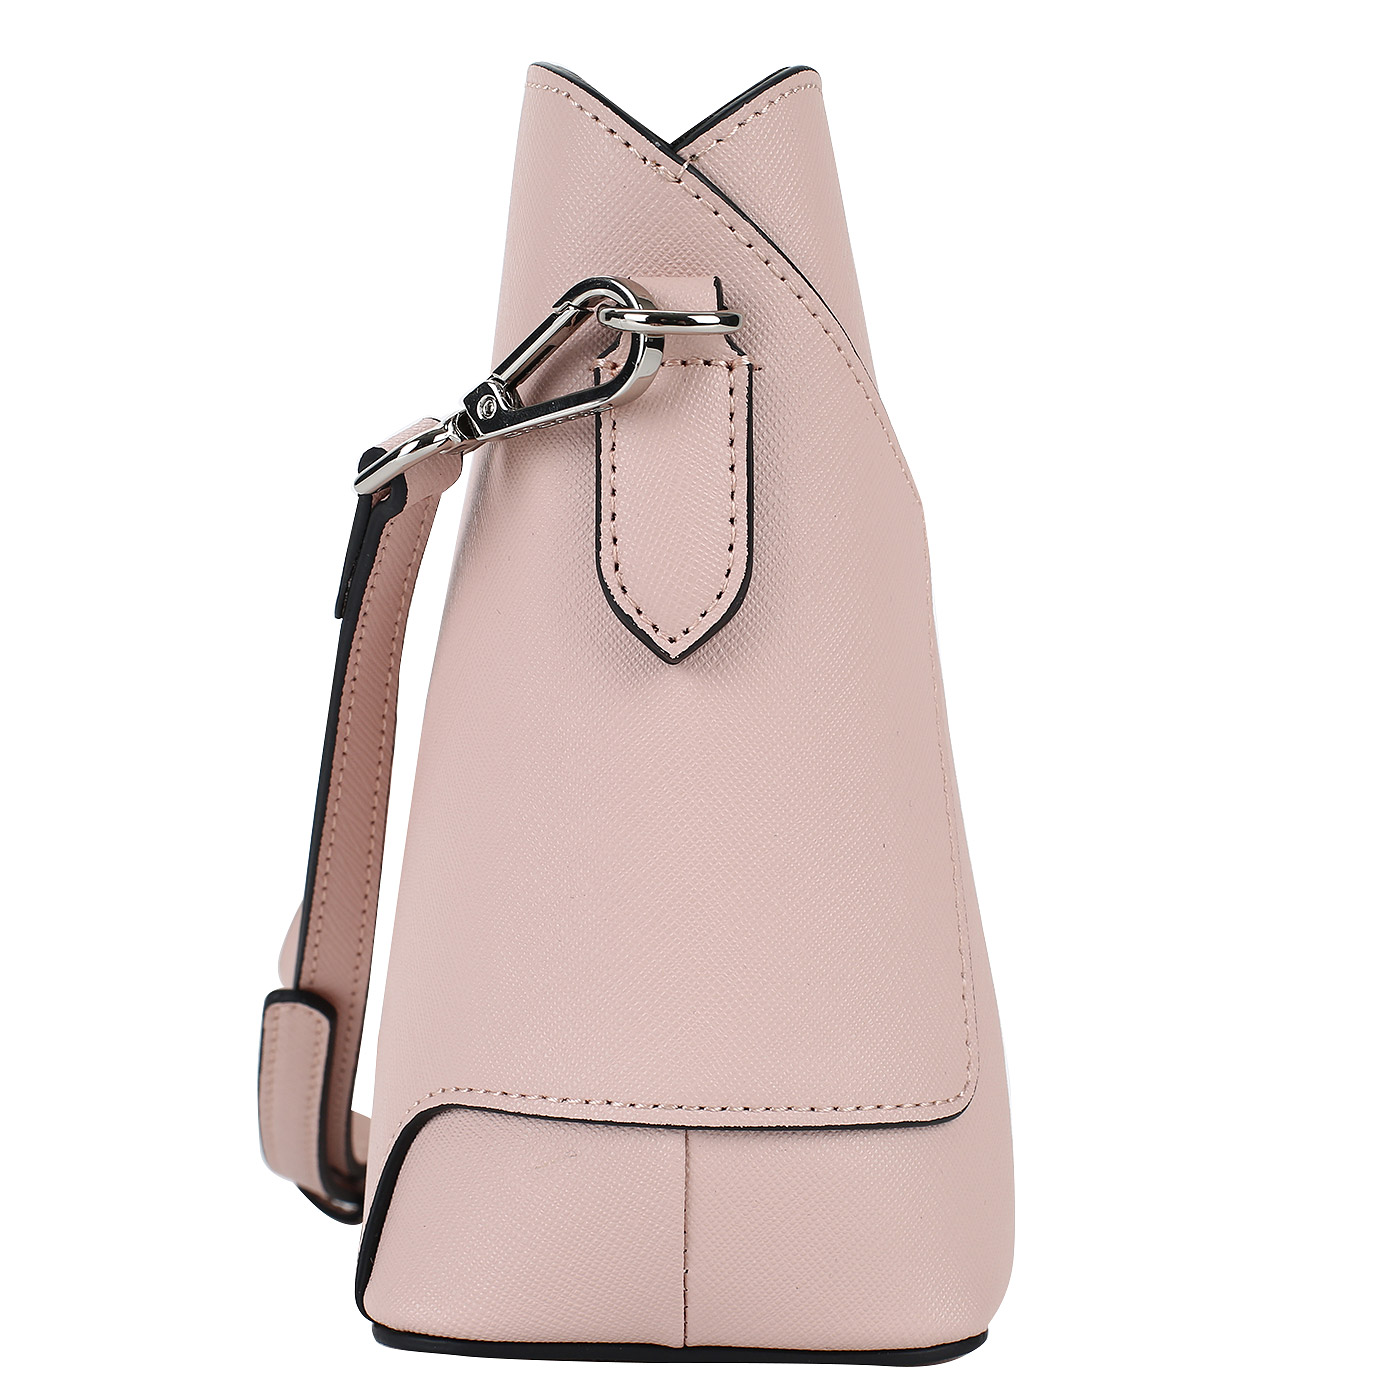 Аккуратная сумочка из розового сафьяна Cromia Wisper